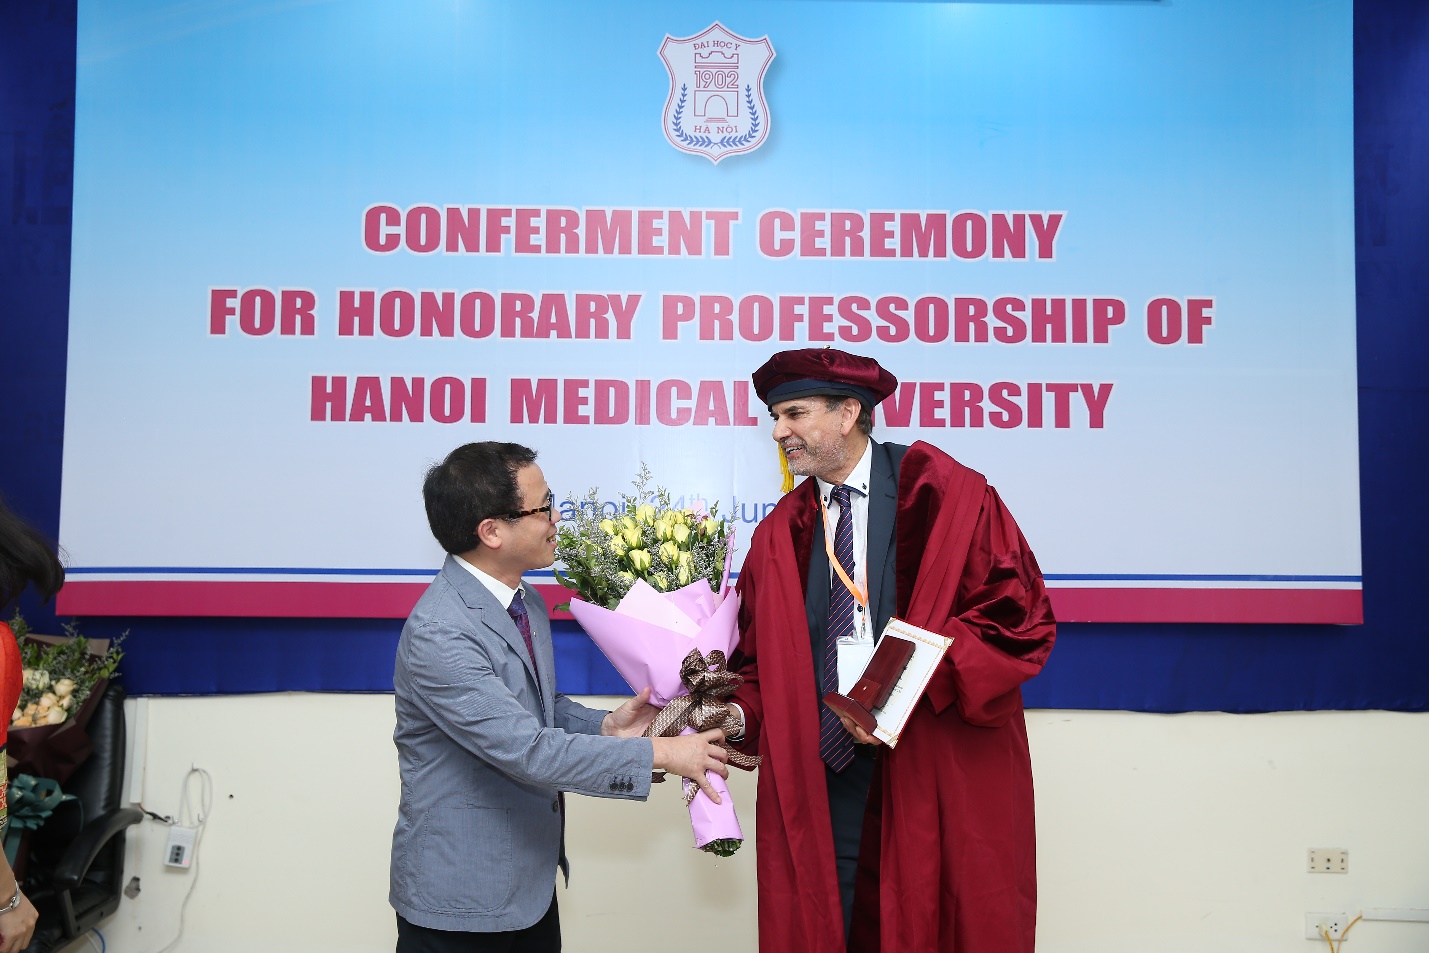 Đại học Y Hà nội trao tặng danh hiệu Giáo sư danh dự cho GS.TS. Michael Tirant